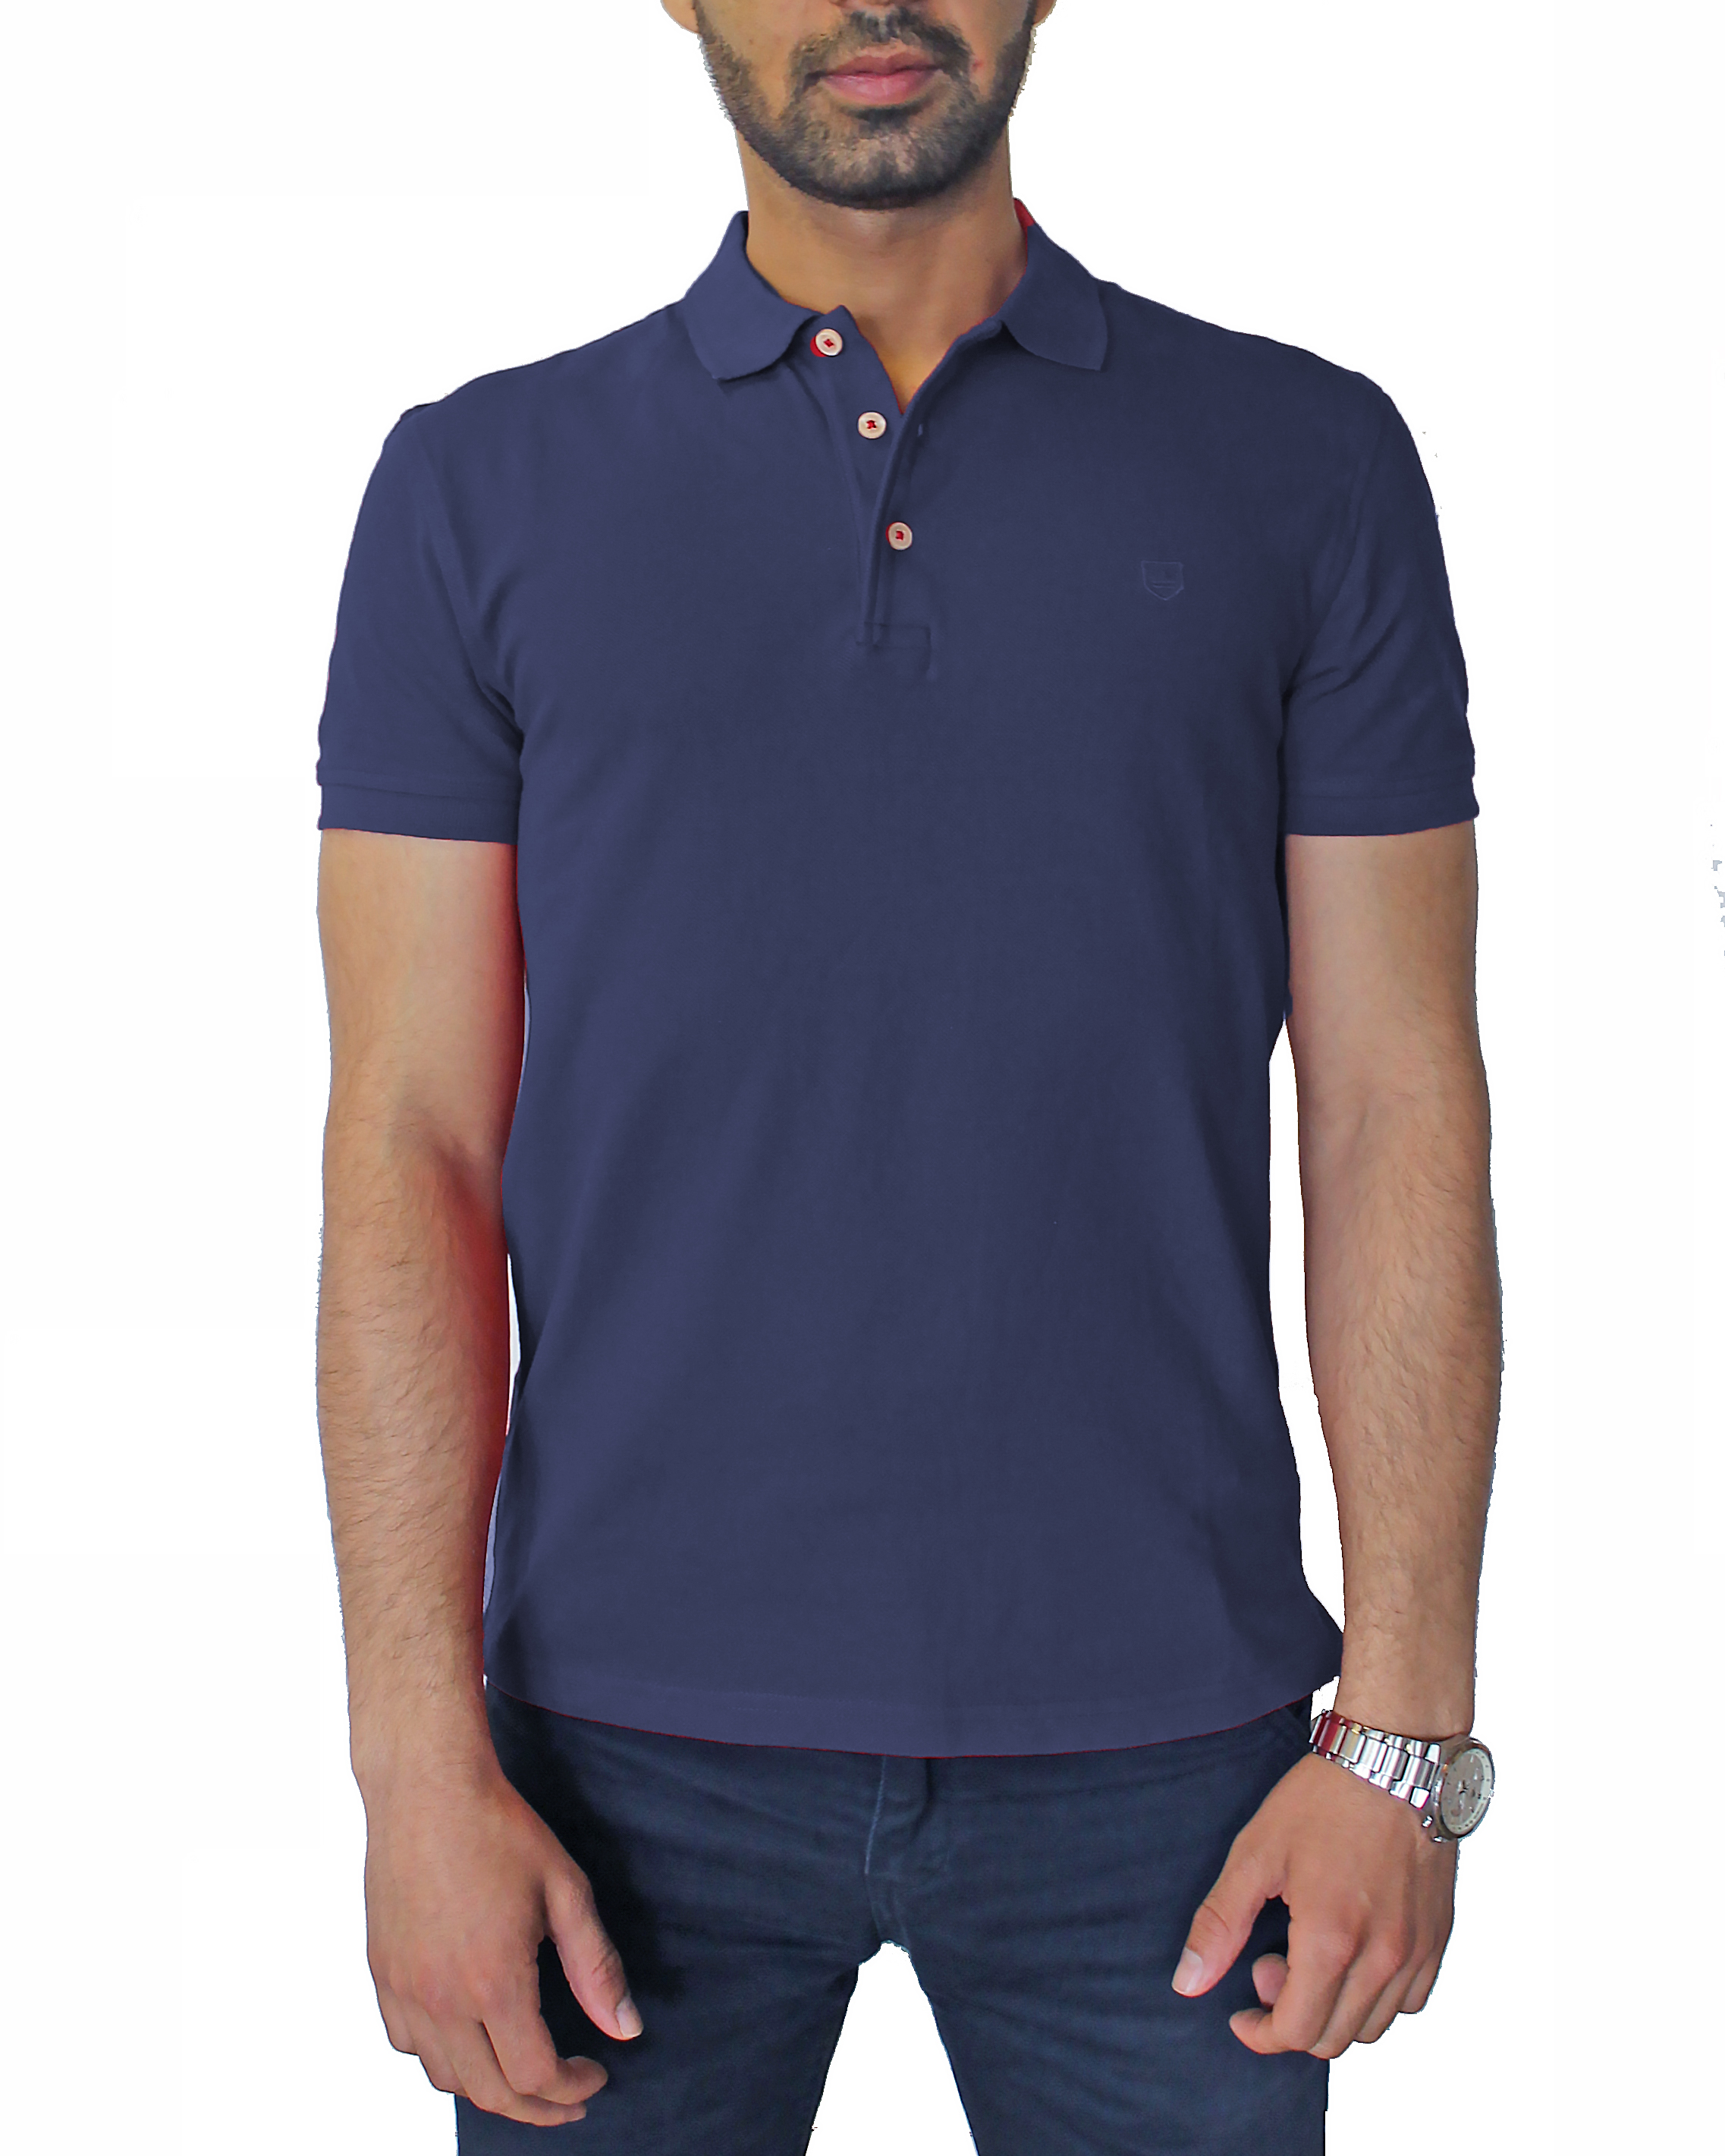 Men's navy Polo shirt - AISSI